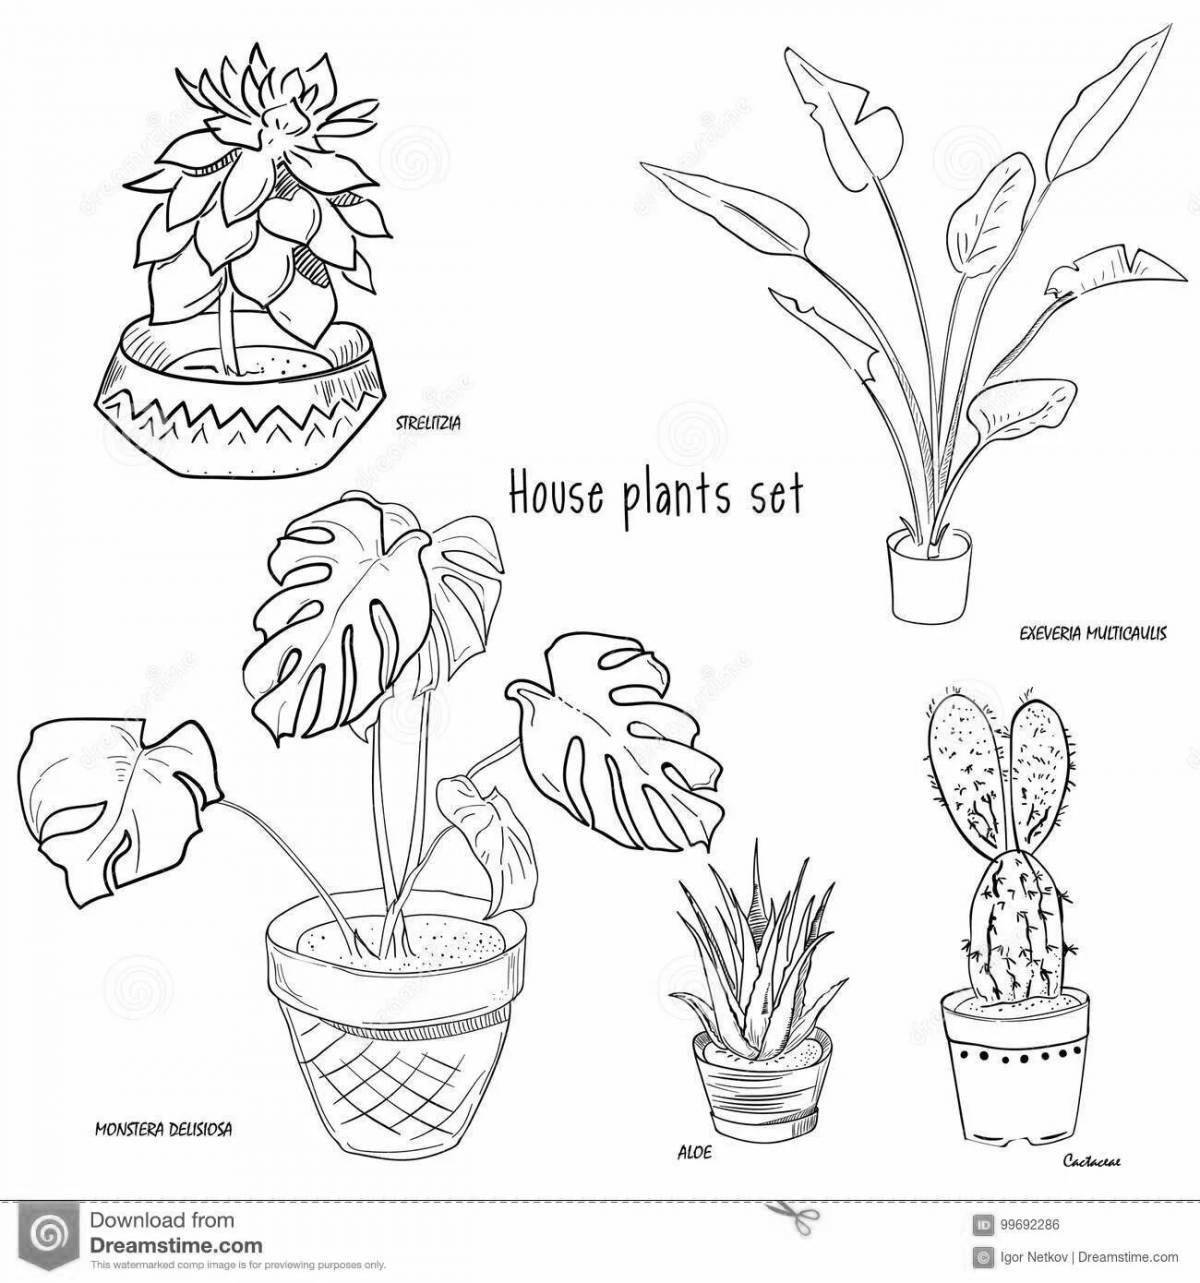 Задания по теме комнатные растения